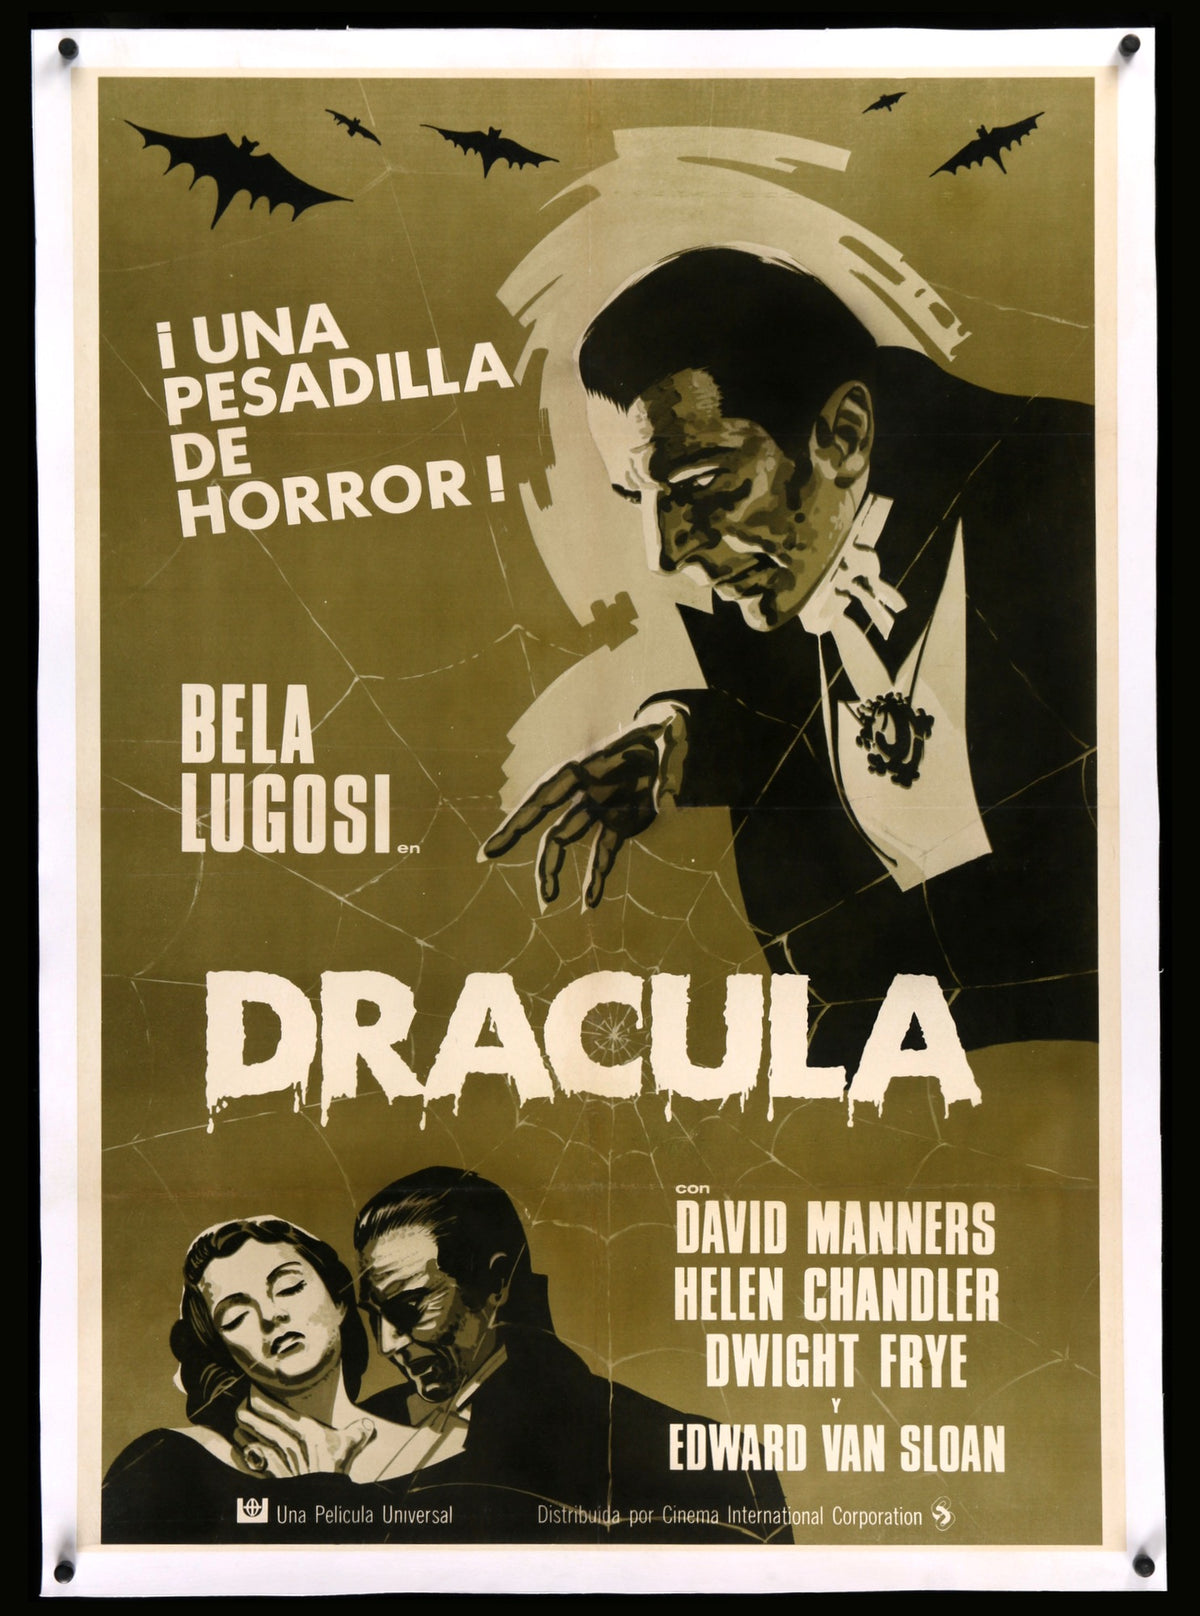 Dracula (1931) original movie poster for sale at Original Film Art